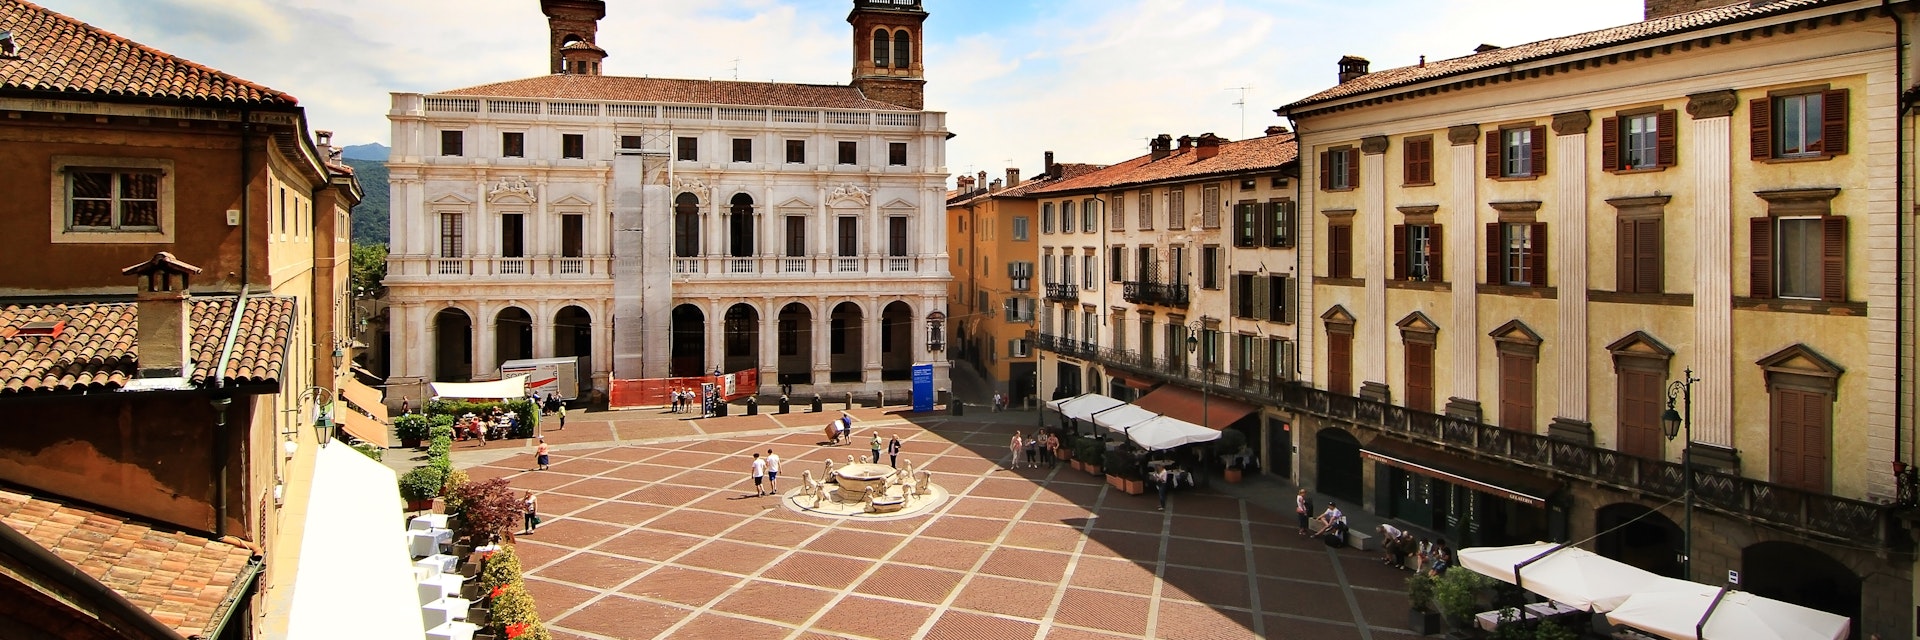 View of Piazza Vecchia in Bergamo.